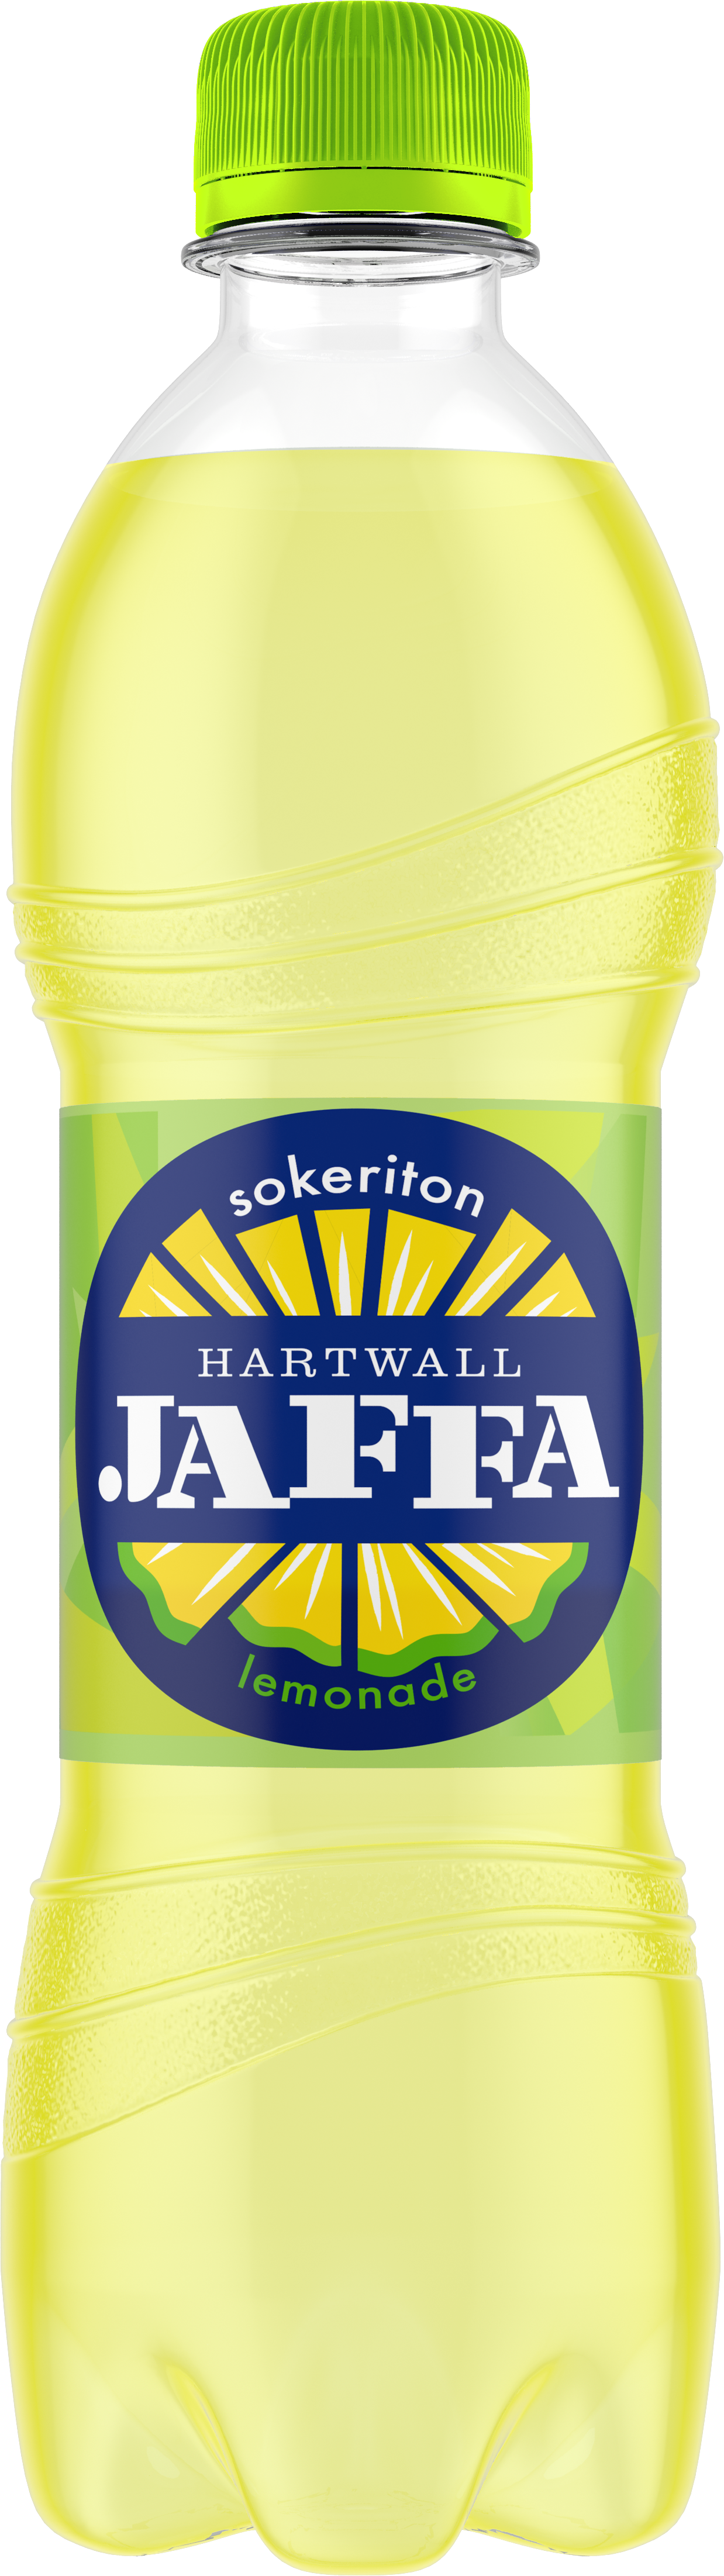 Hartwall Jaffa Lemonade Sokeriton